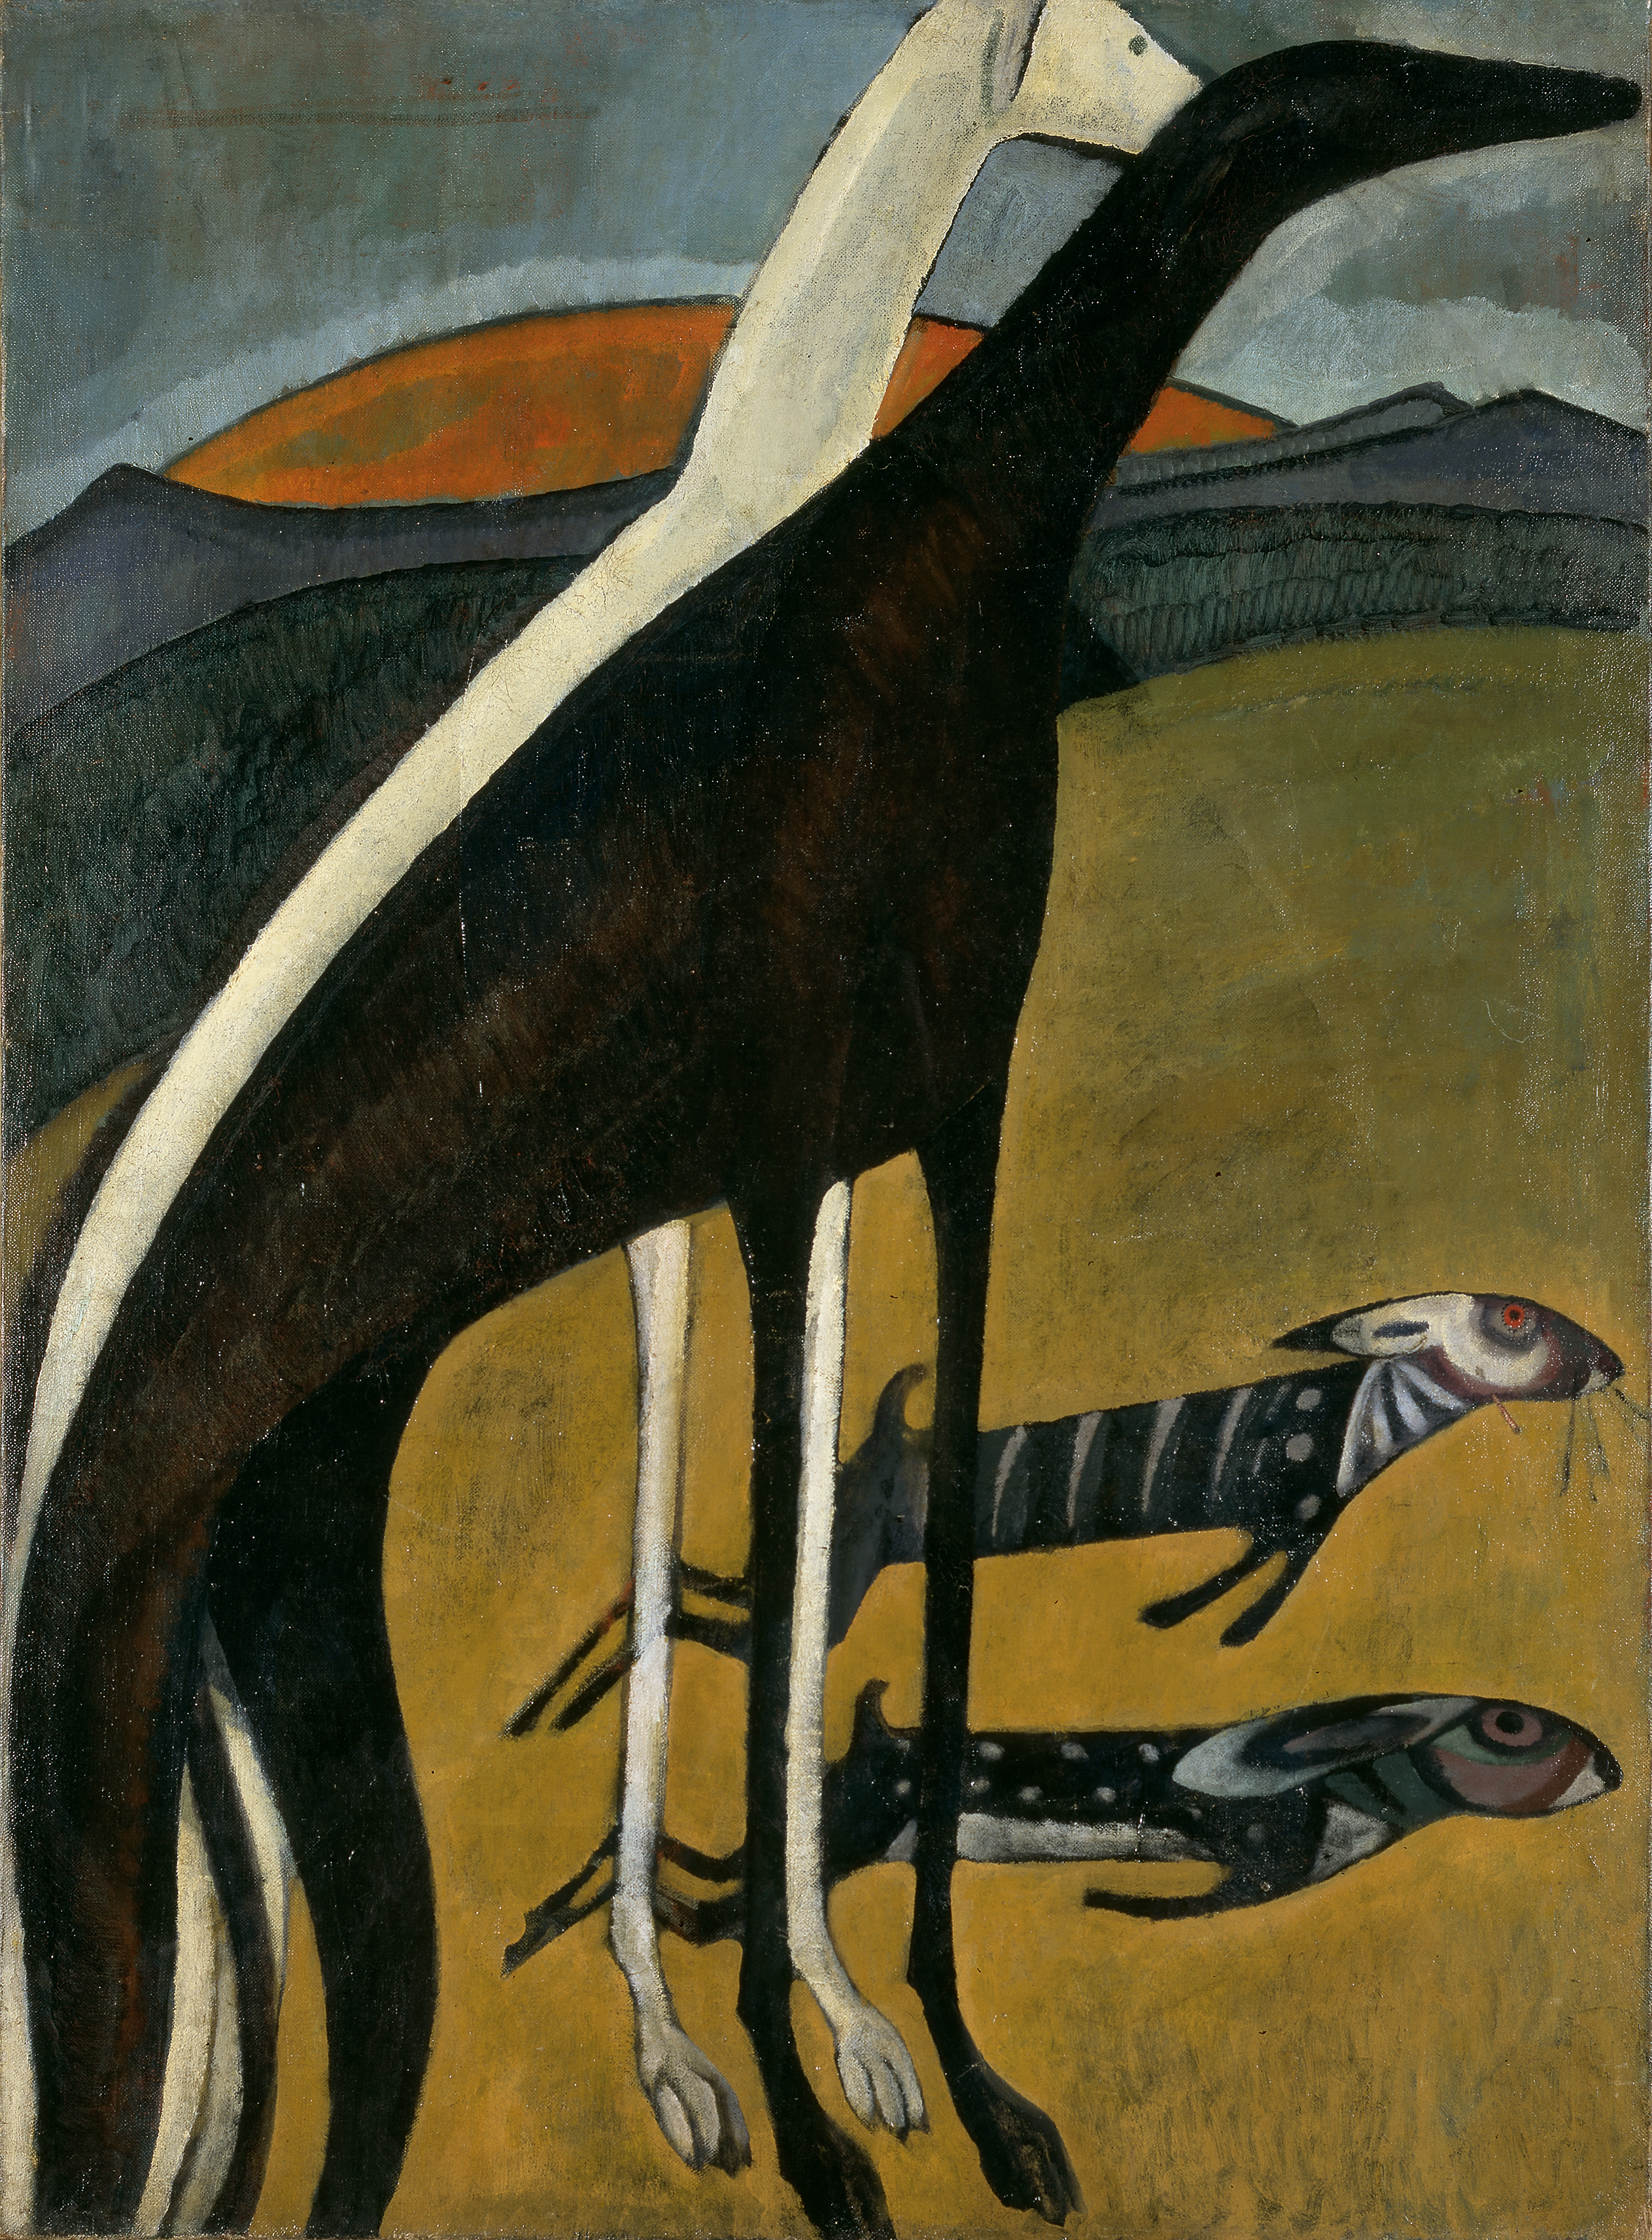 グレーハウンド by Amadeo de Souza Cardoso - 1911年 - 100 x 73 cm 